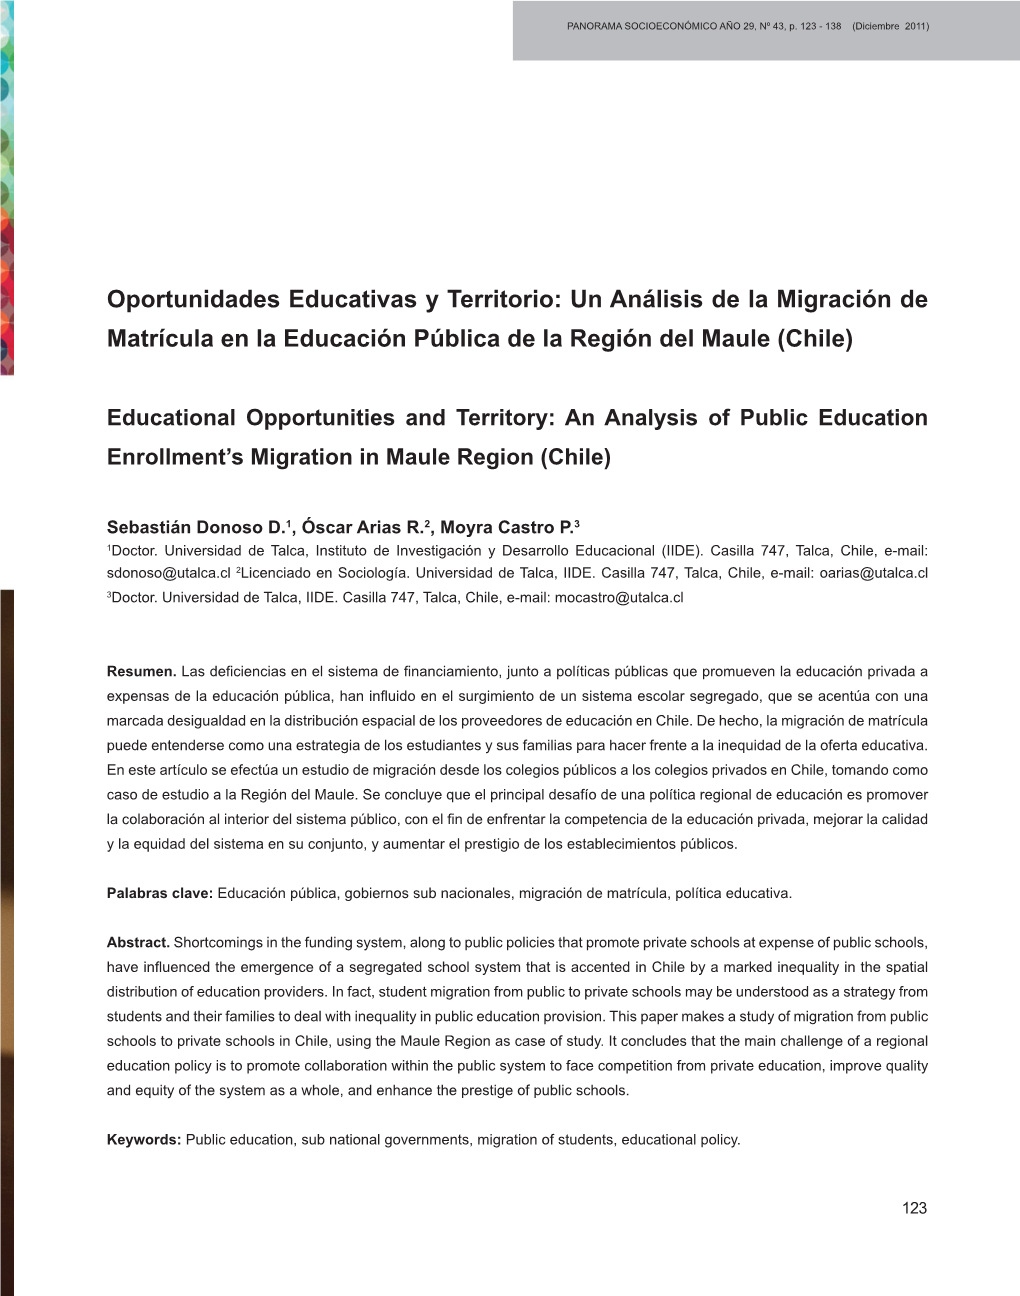 Oportunidades Educativas Y Territorio: Un Análisis De La Migración De Matrícula En La Educación Pública De La Región Del Maule (Chile)